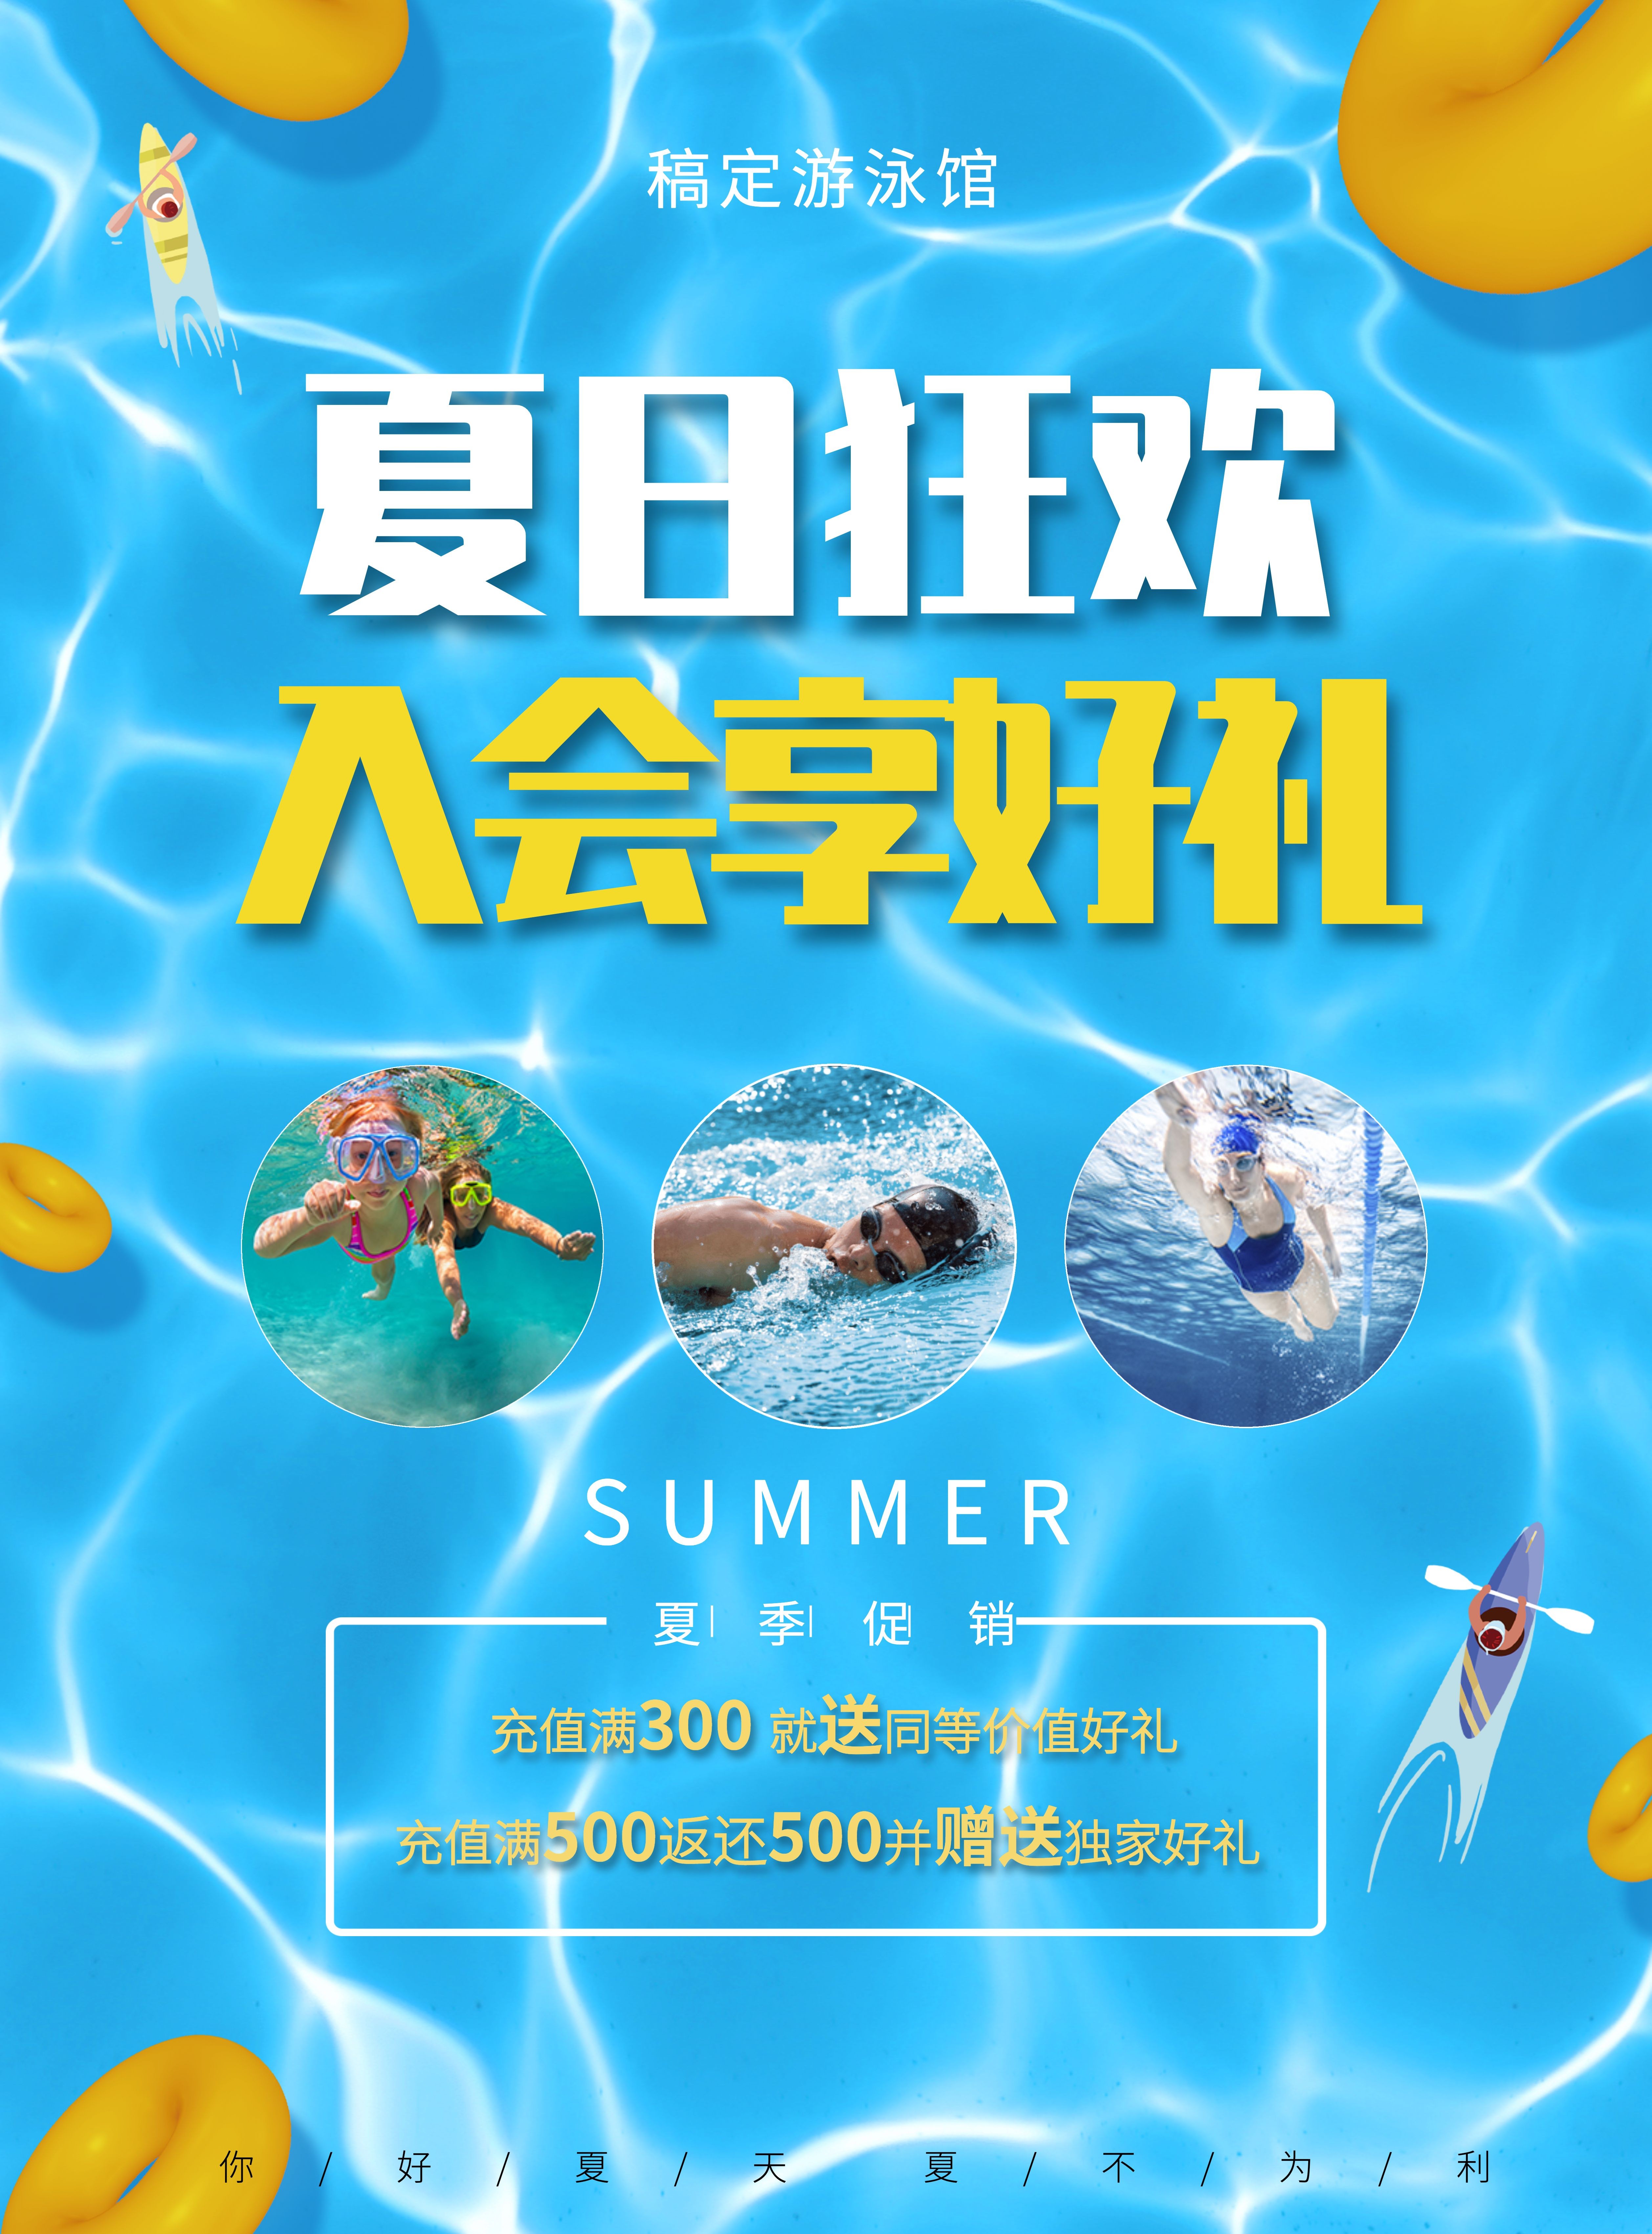 入会享好礼游泳馆夏季促销优惠张贴海报